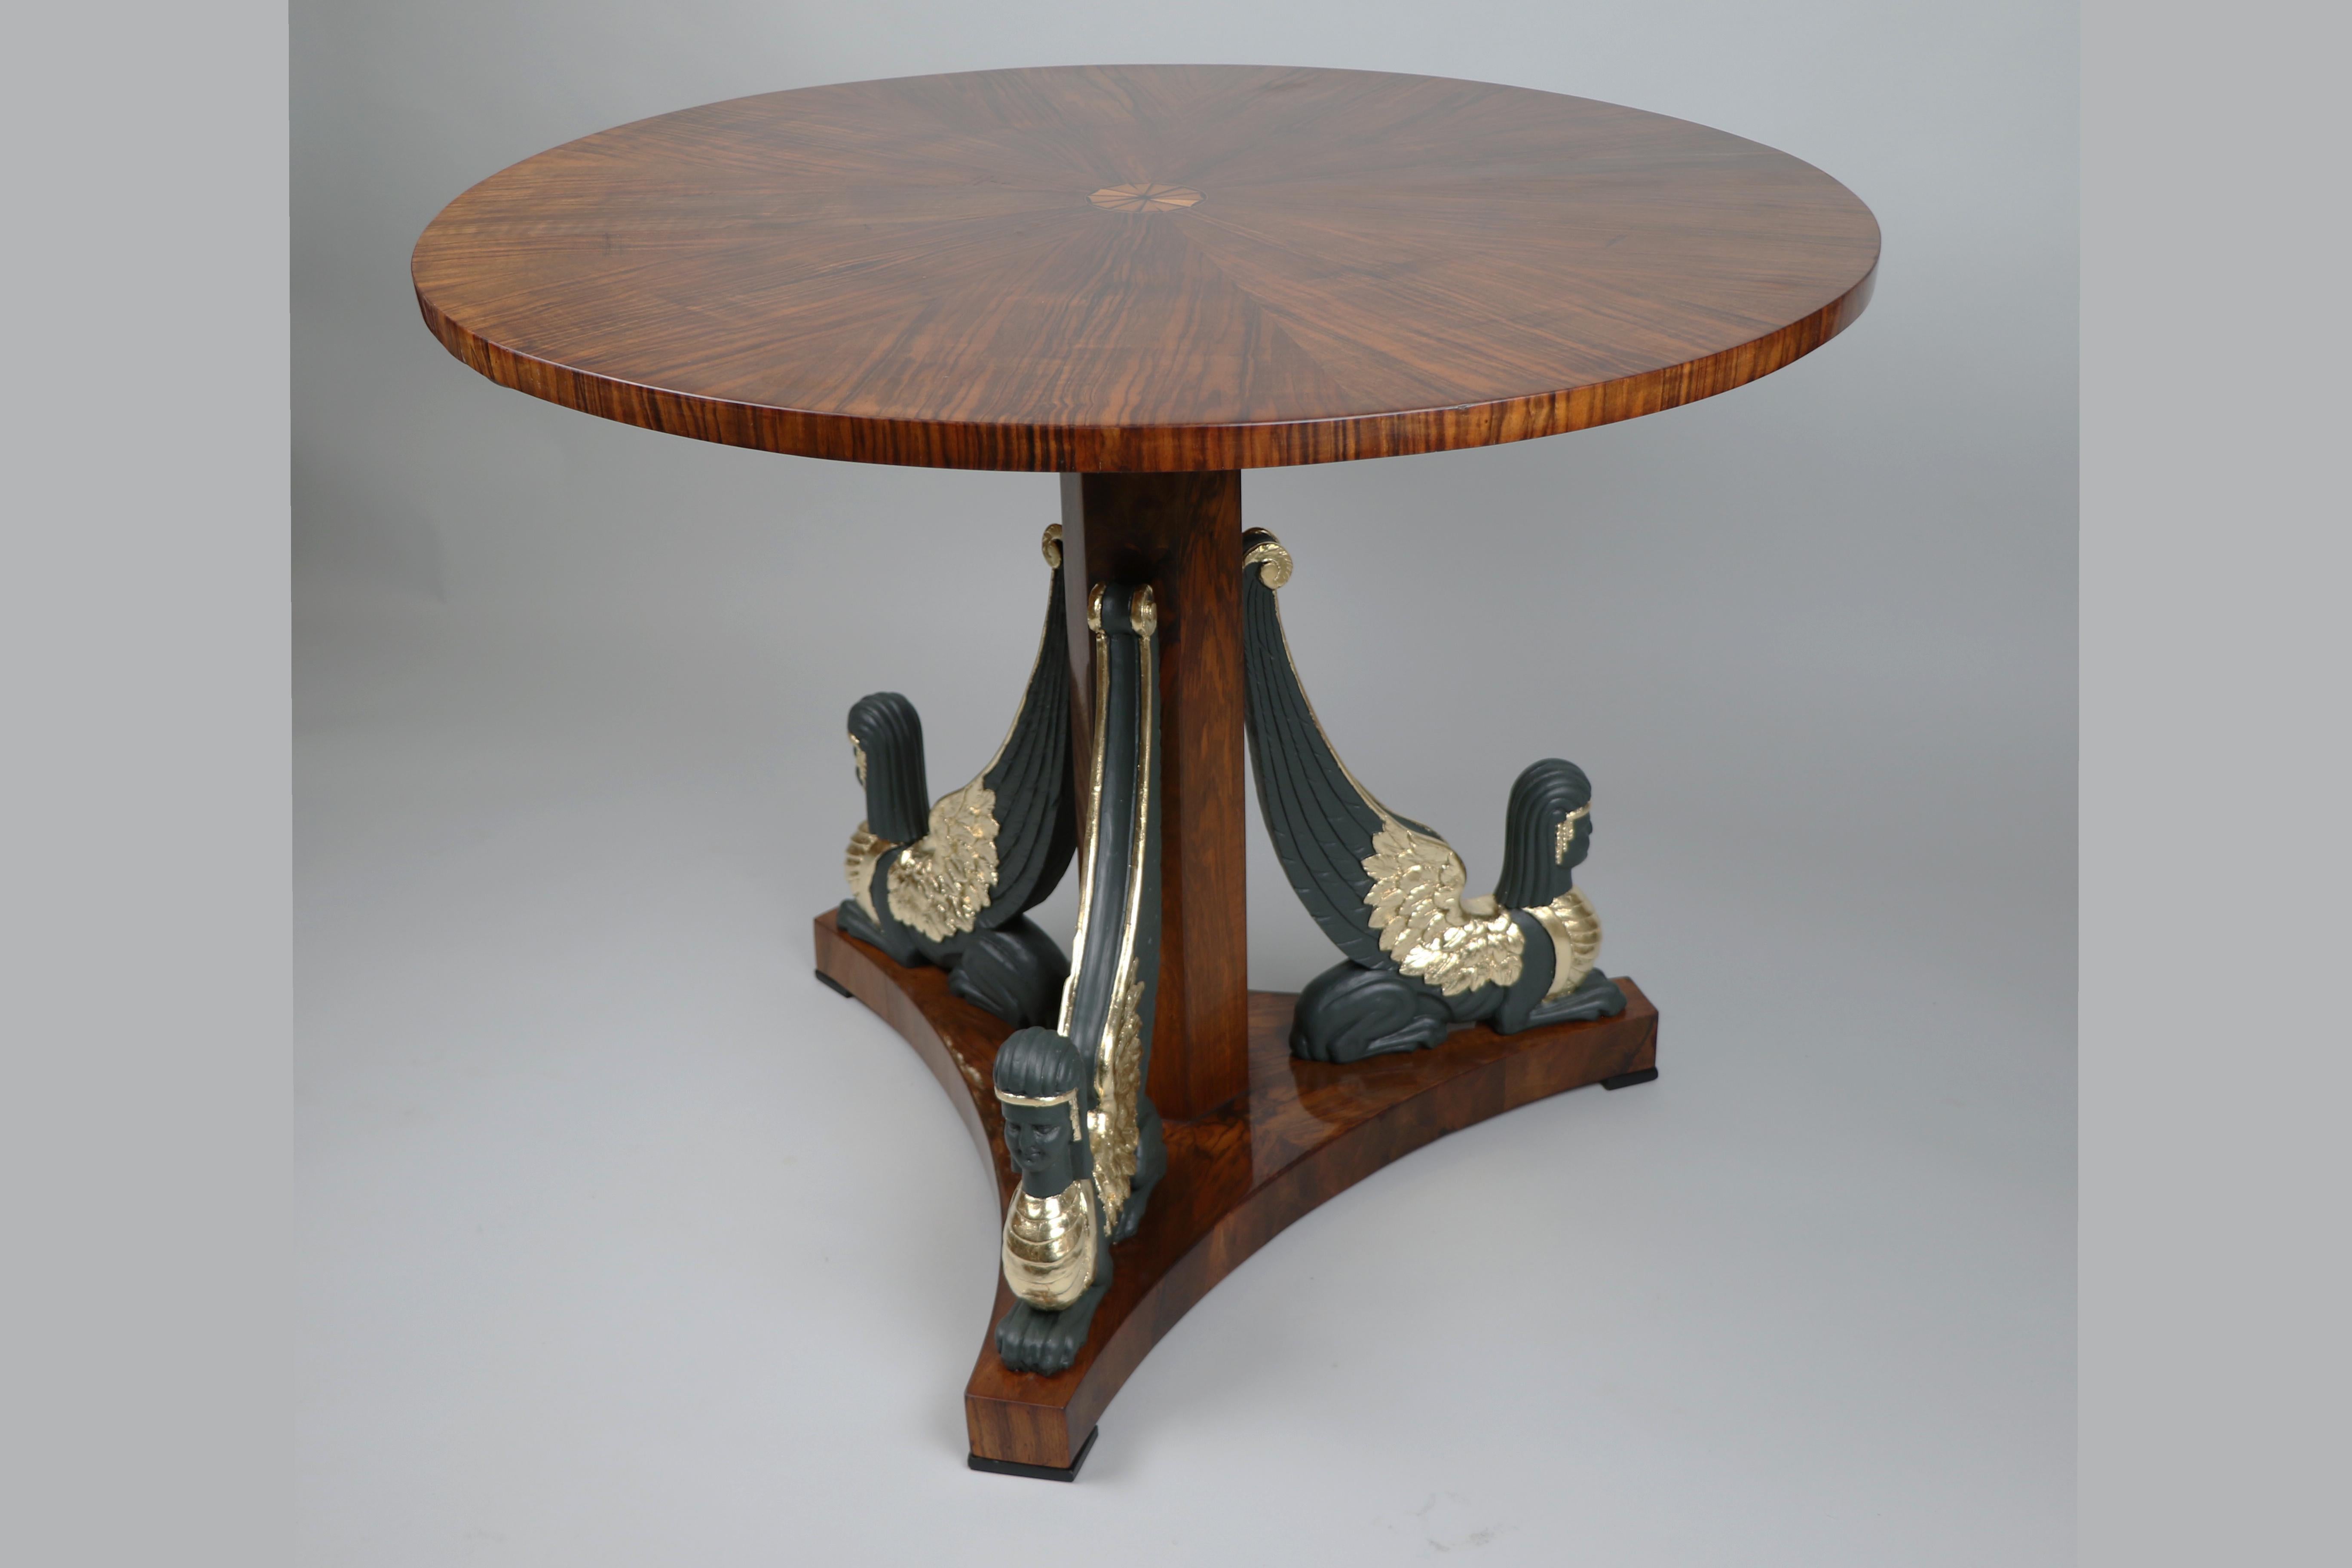 
Hallo,
Dieser prächtige Biedermeier-Sockeltisch aus Nussbaumholz ist das beste Beispiel für ein hochwertiges Wiener Stück aus der Zeit um 1820. Der Tisch ist ein prächtiges Beispiel für frühes Biedermeier mit Einflüssen des Empire-Stils.

Das